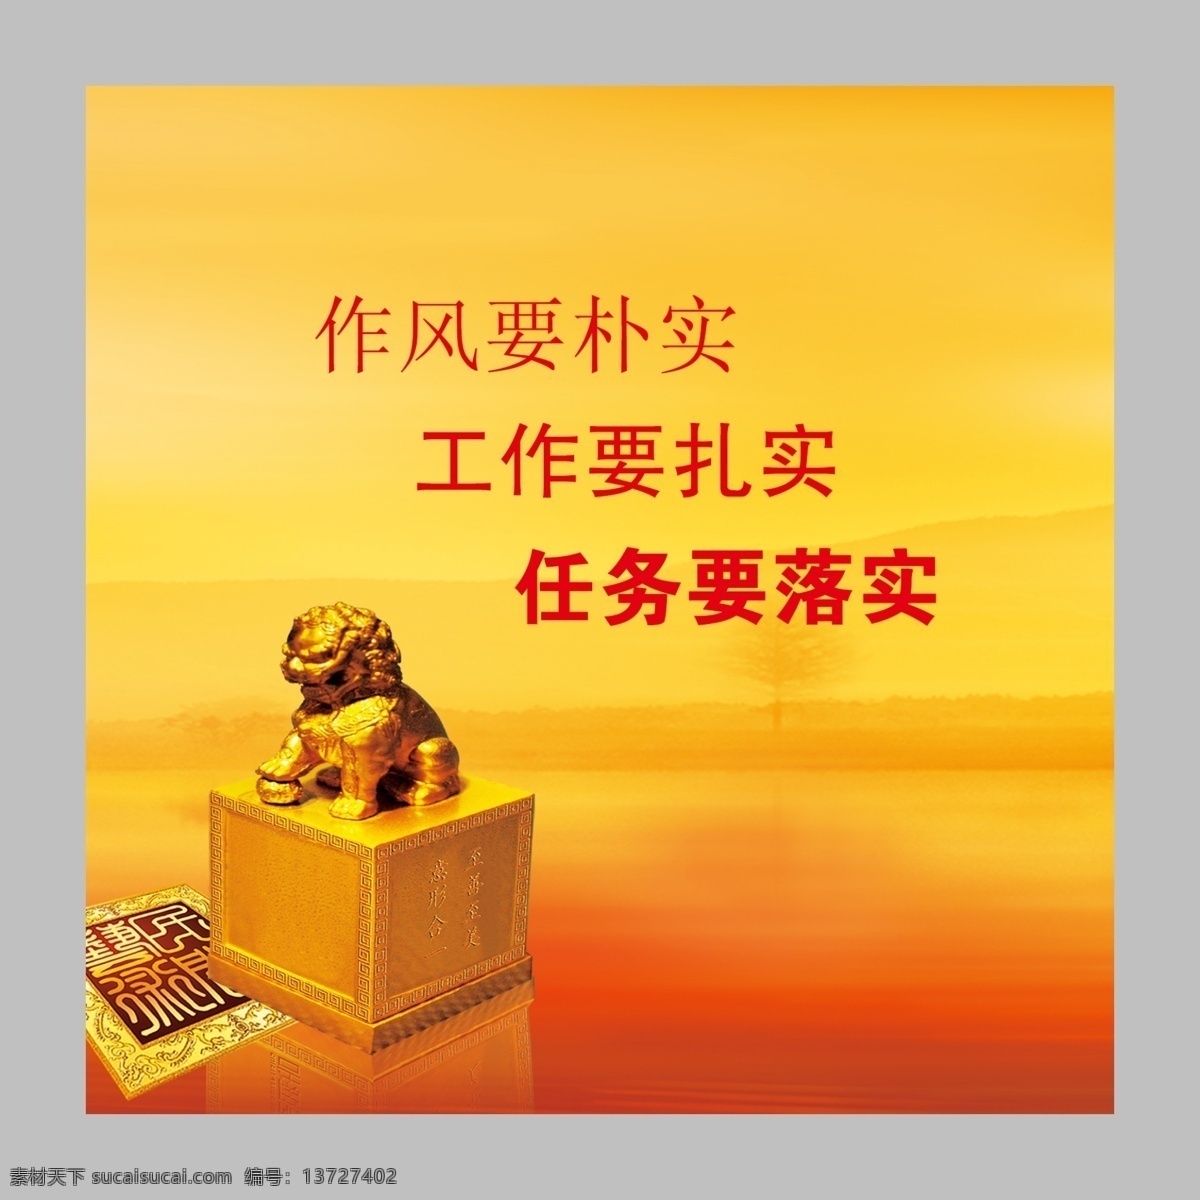 文化版面 企业文化 牌板 印章 雕塑 狮子 广告设计模板 源文件 展板模板